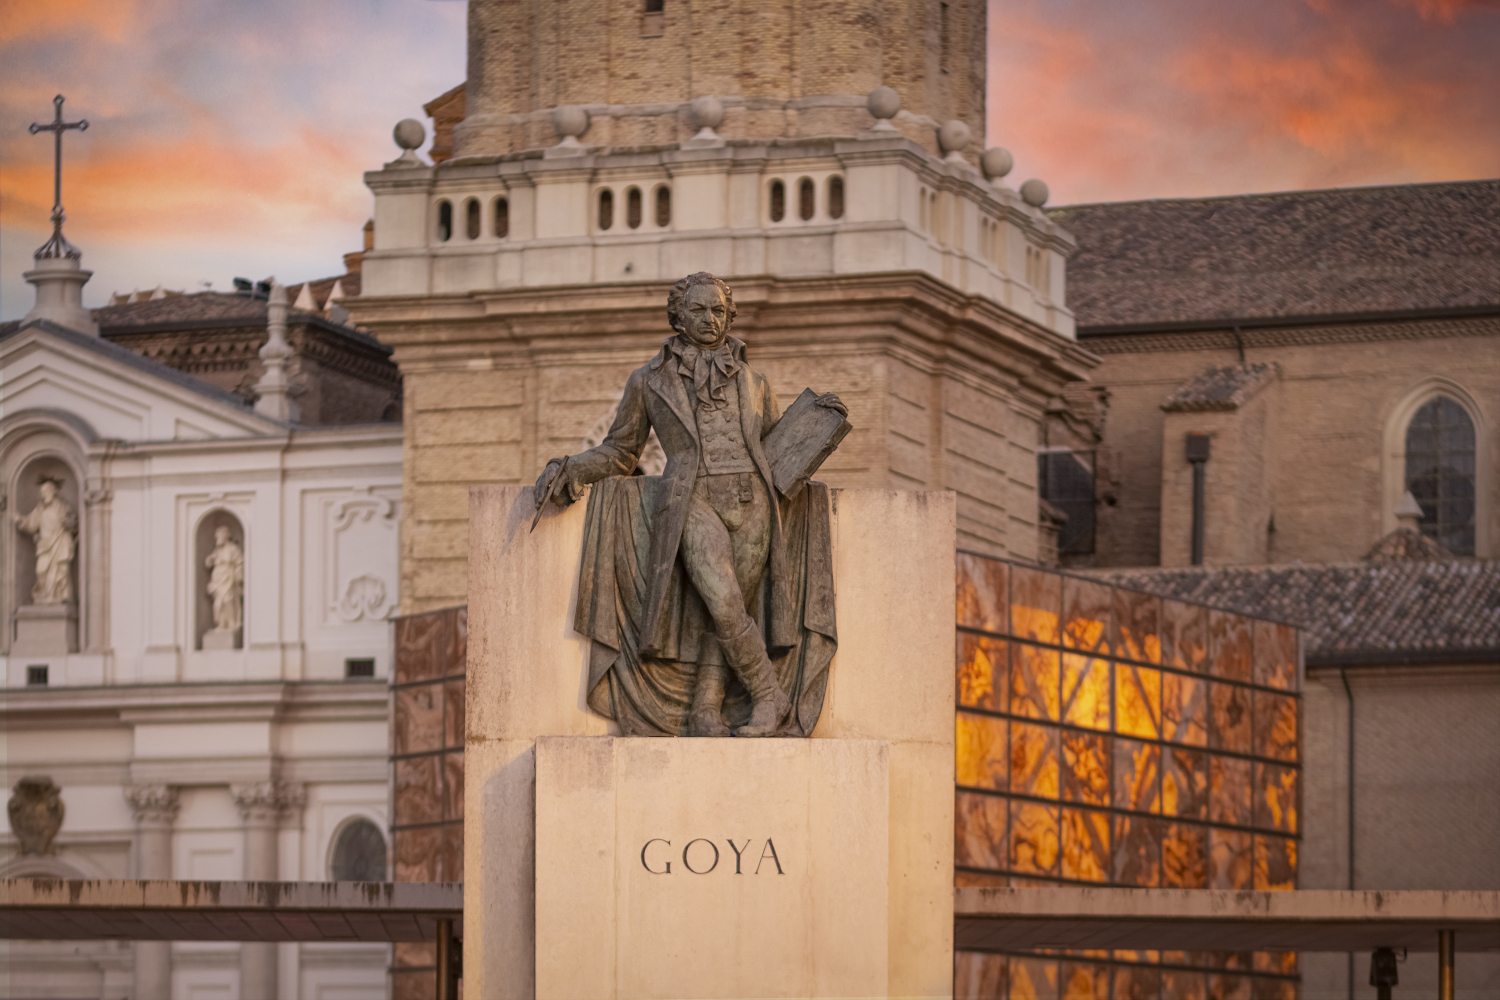 Goya monument in Zaragoza. Photo by Luis Lacorte